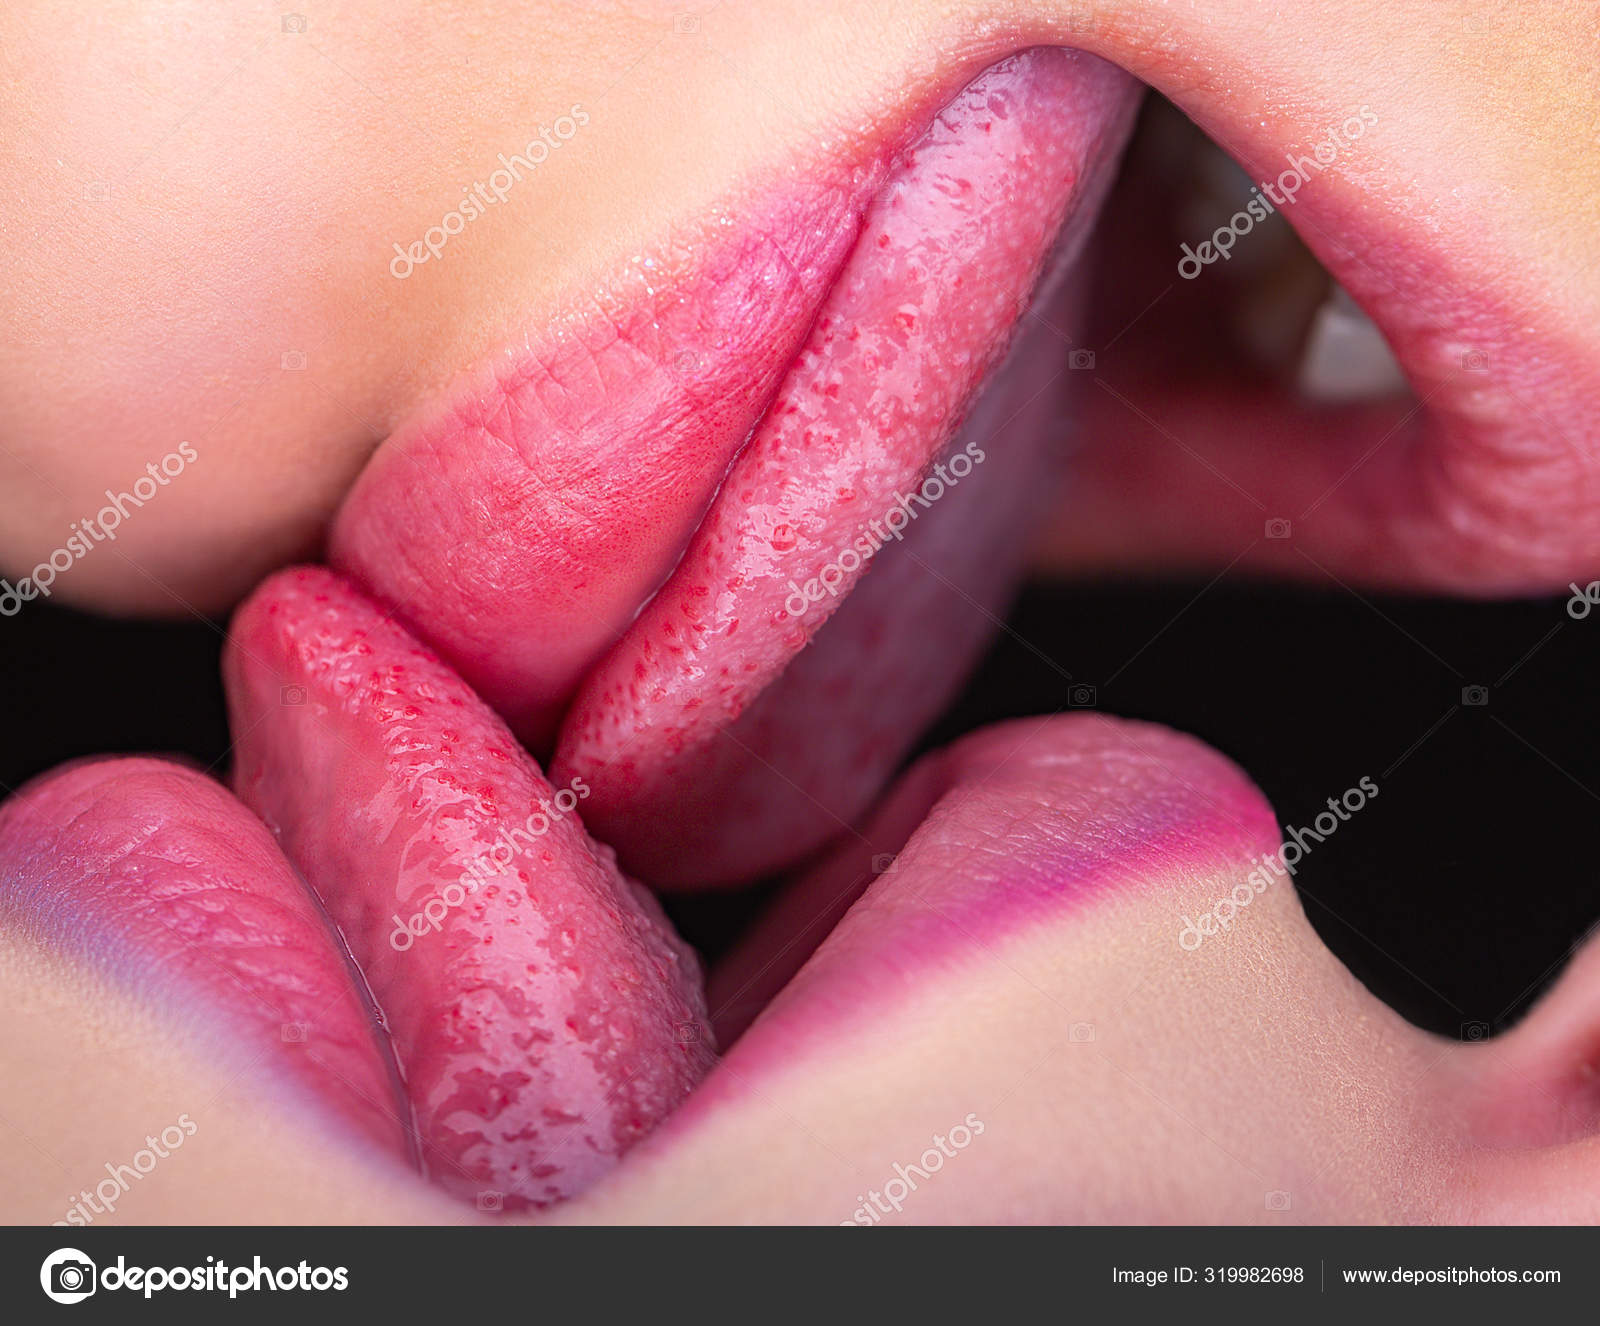 Tongue kisses 20 Types